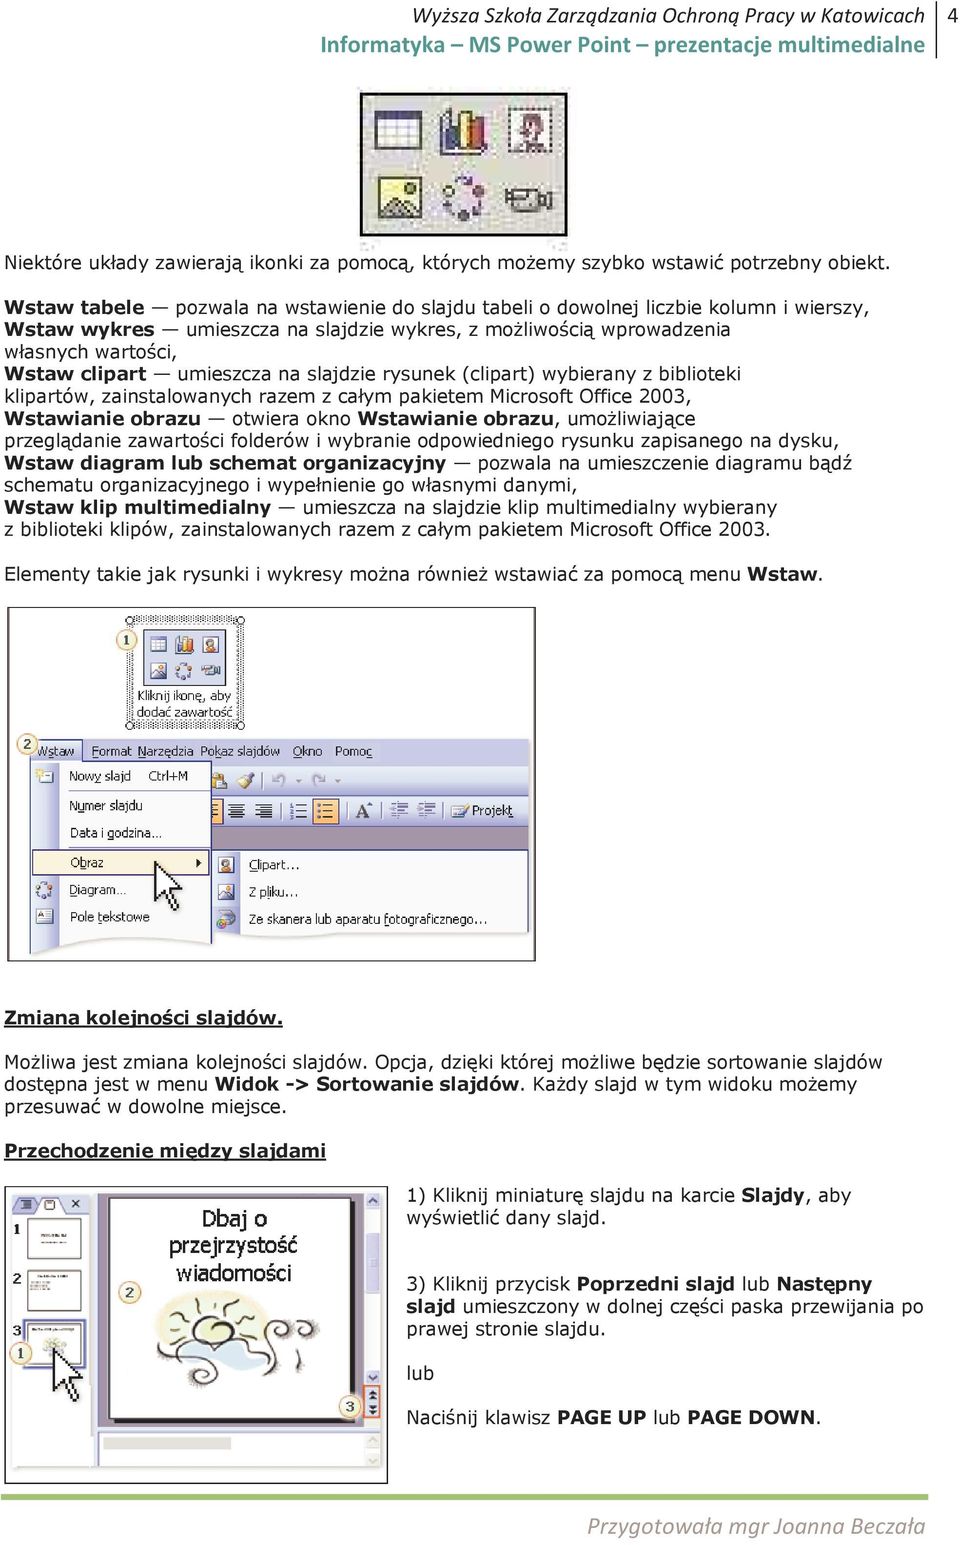 umieszcza na slajdzie rysunek (clipart) wybierany z biblioteki klipartów, zainstalowanych razem z całym pakietem Microsoft Office 2003, Wstawianie obrazu otwiera okno Wstawianie obrazu, umoŝliwiające